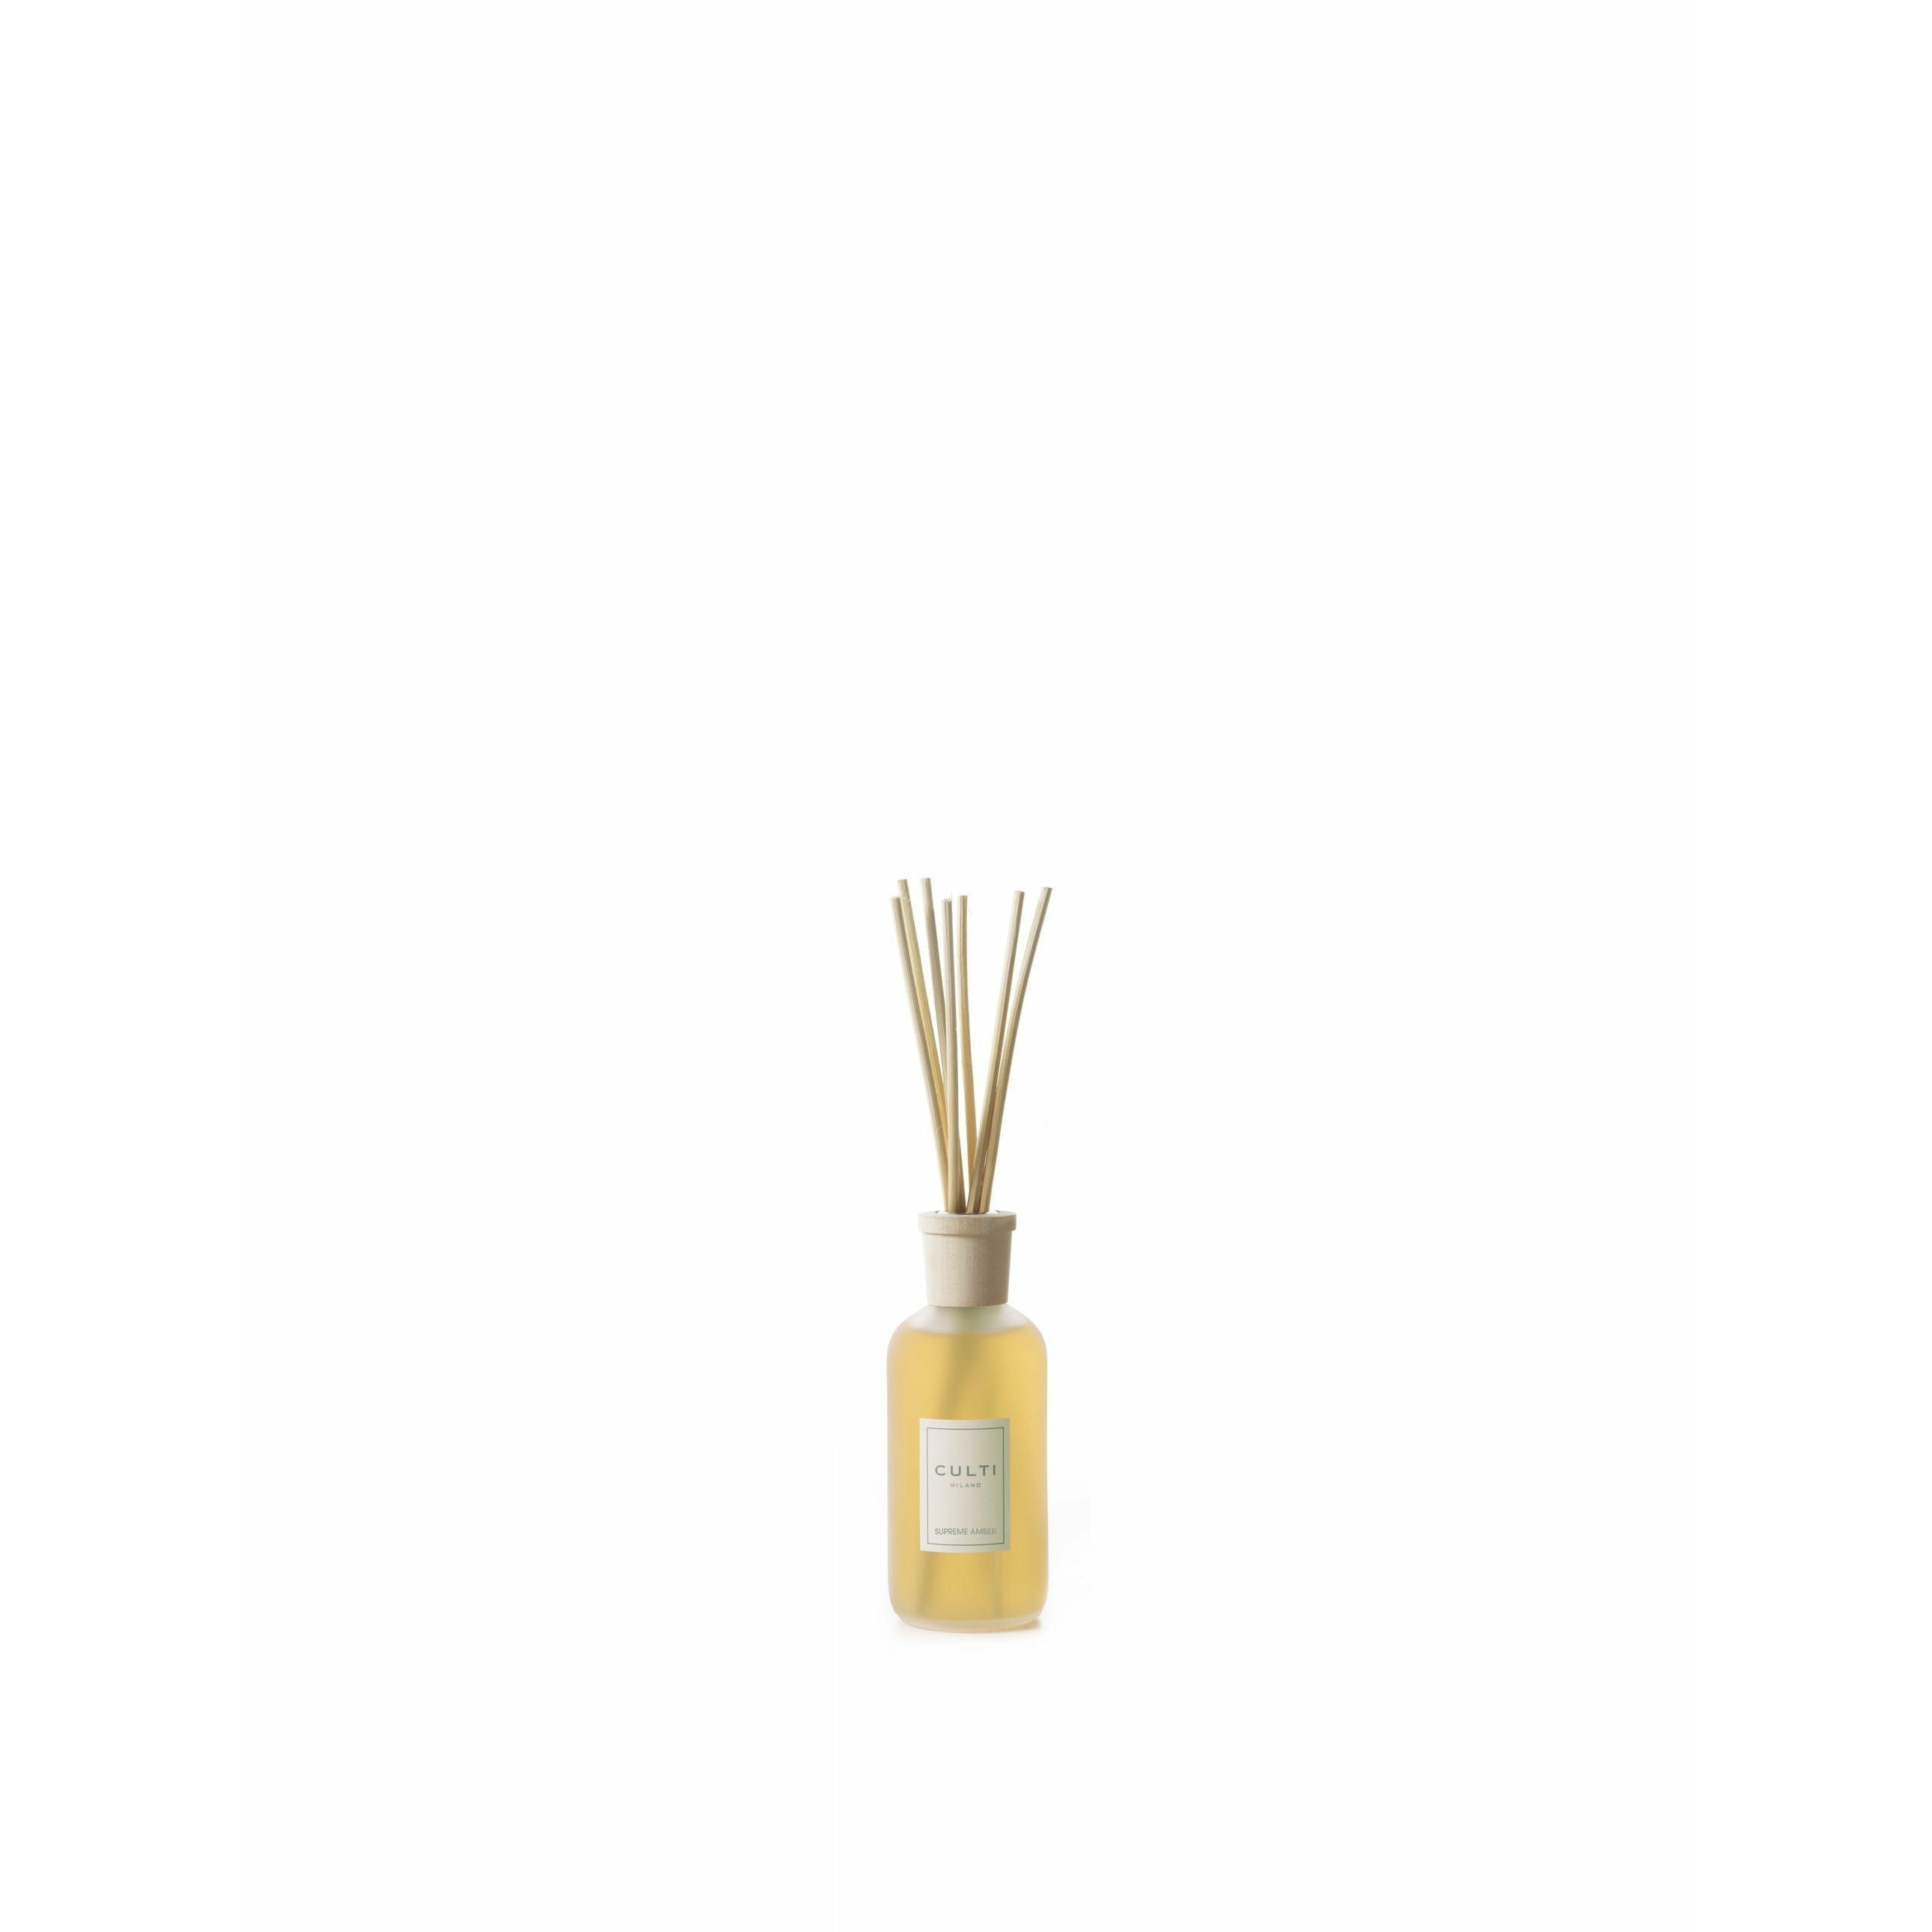 Culti Milano Stile klassieke geur diffuser Supreme Amber, 250 ml